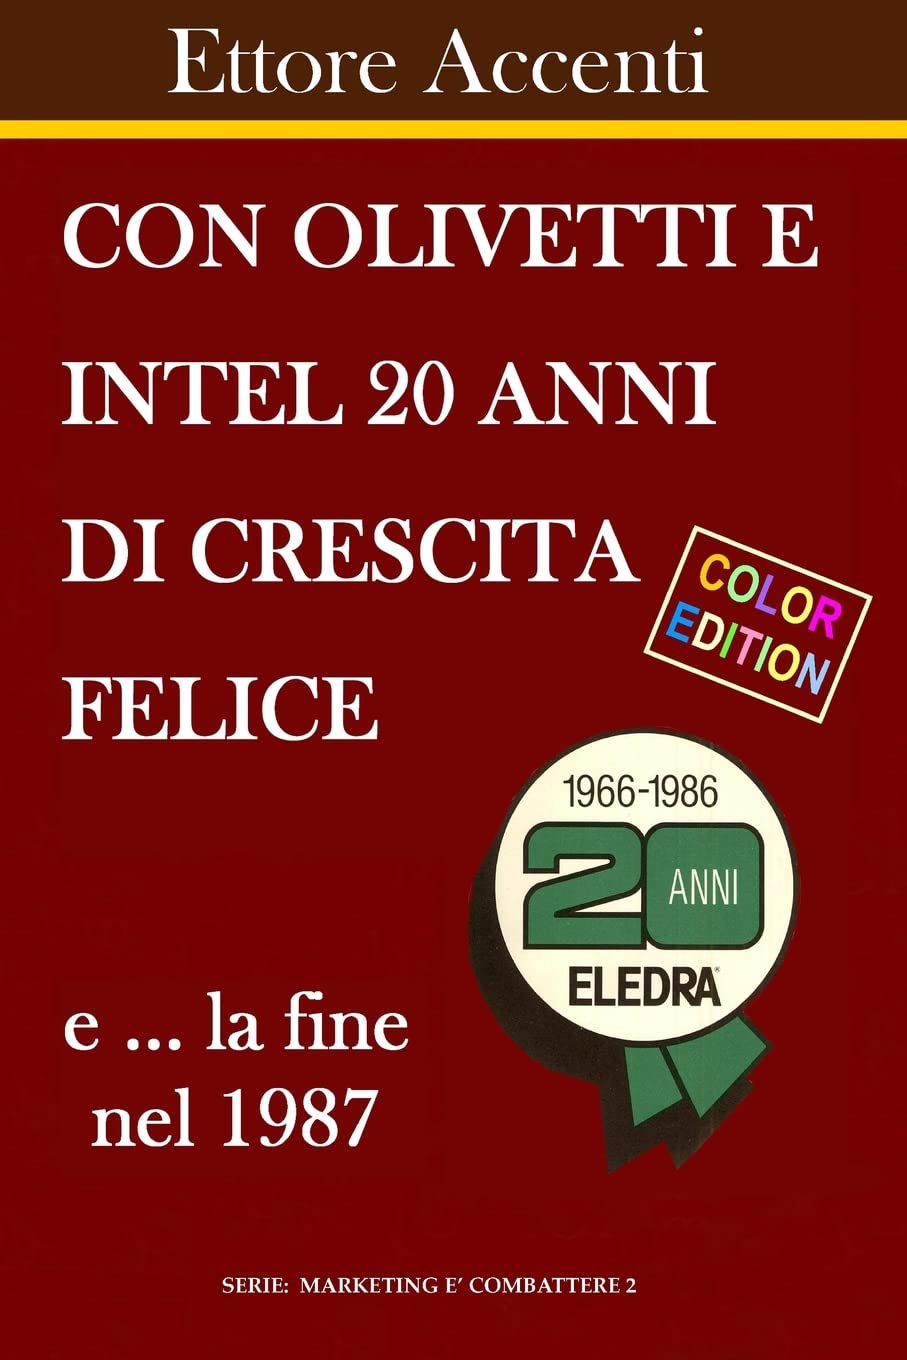 Con Olivetti e Intel 20 anni di crescita felice e la fine nel 1987 (AudiobookFormat, italiano language, CreateSpace Independent Publishing Platform)